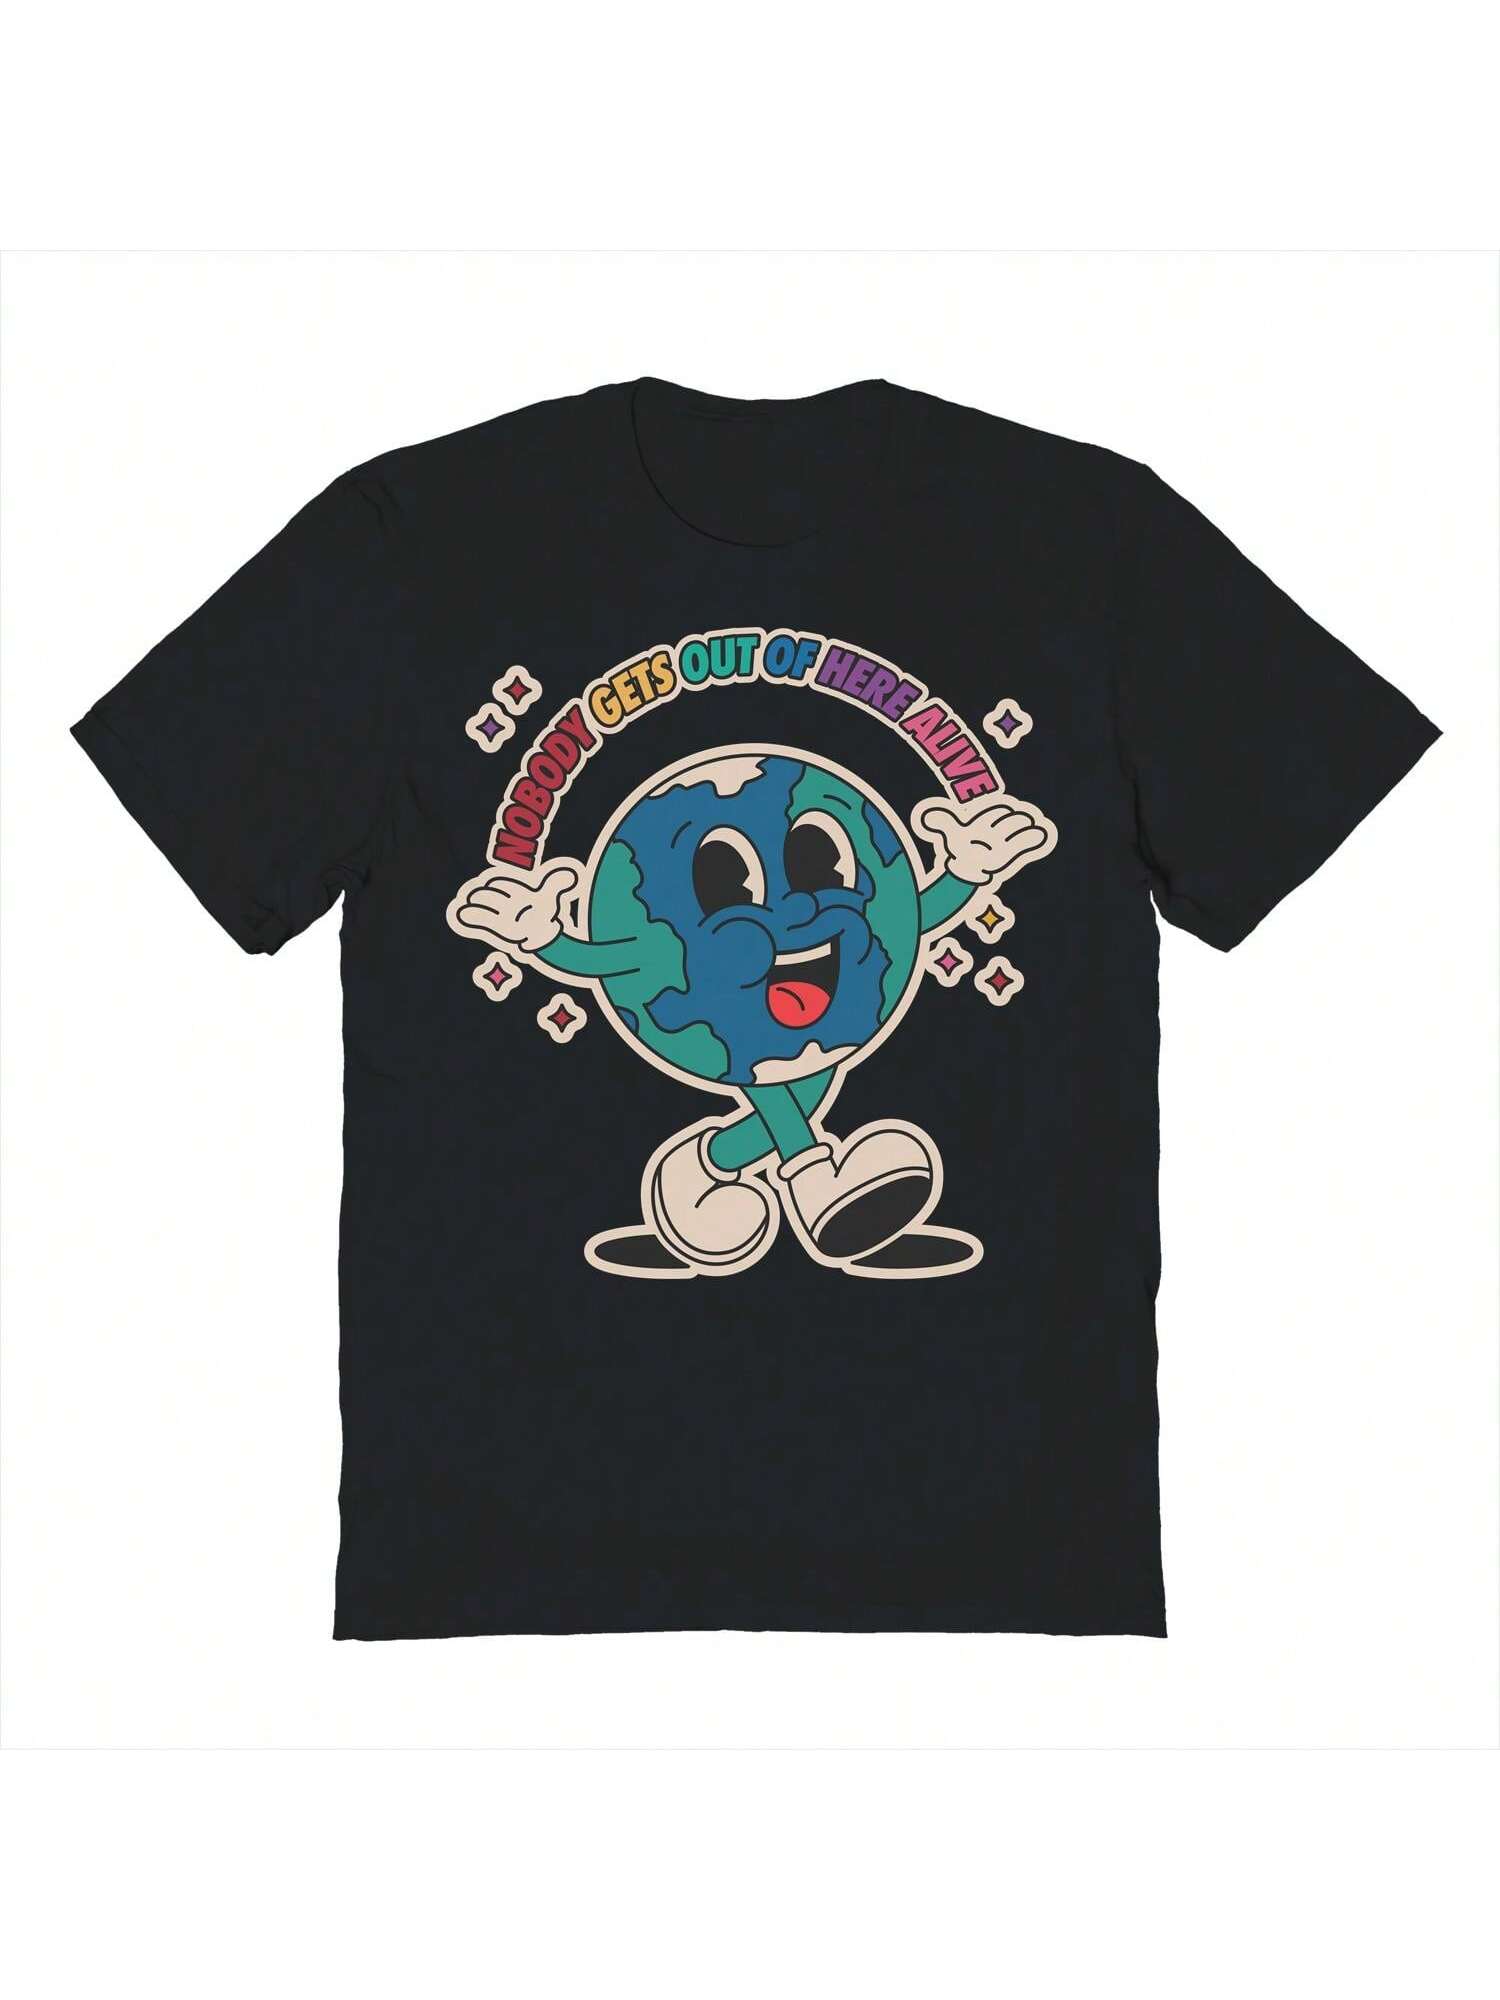 Хлопковая футболка унисекс с короткими рукавами и графикой Pop Creature Alive, черный